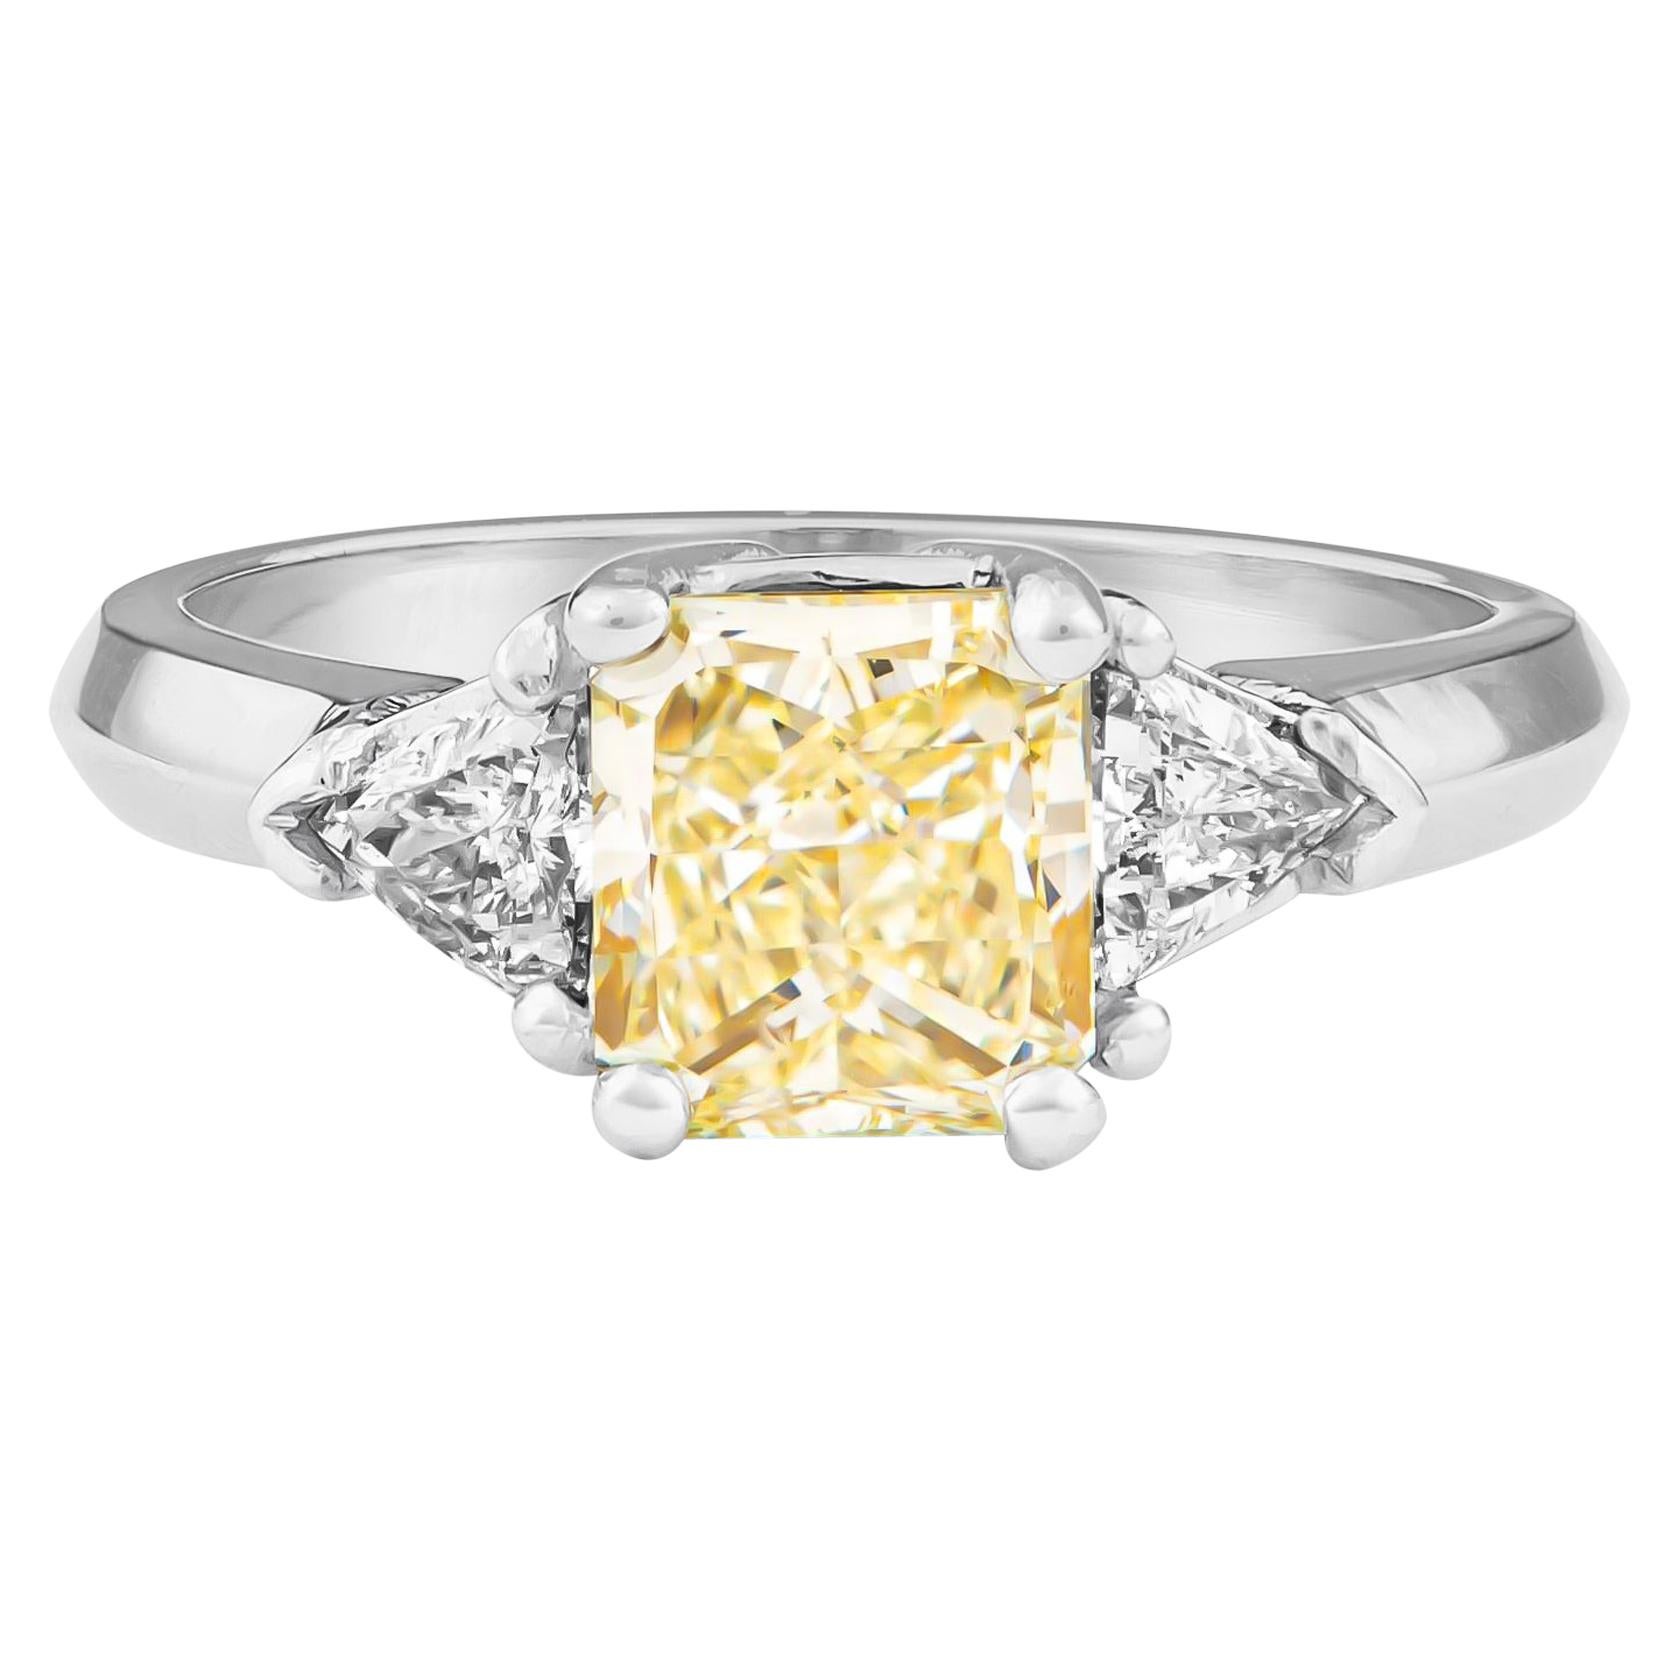 1.80 Carat Total Radiant Diamond 'GIA', Three-Stone Diamond Ring